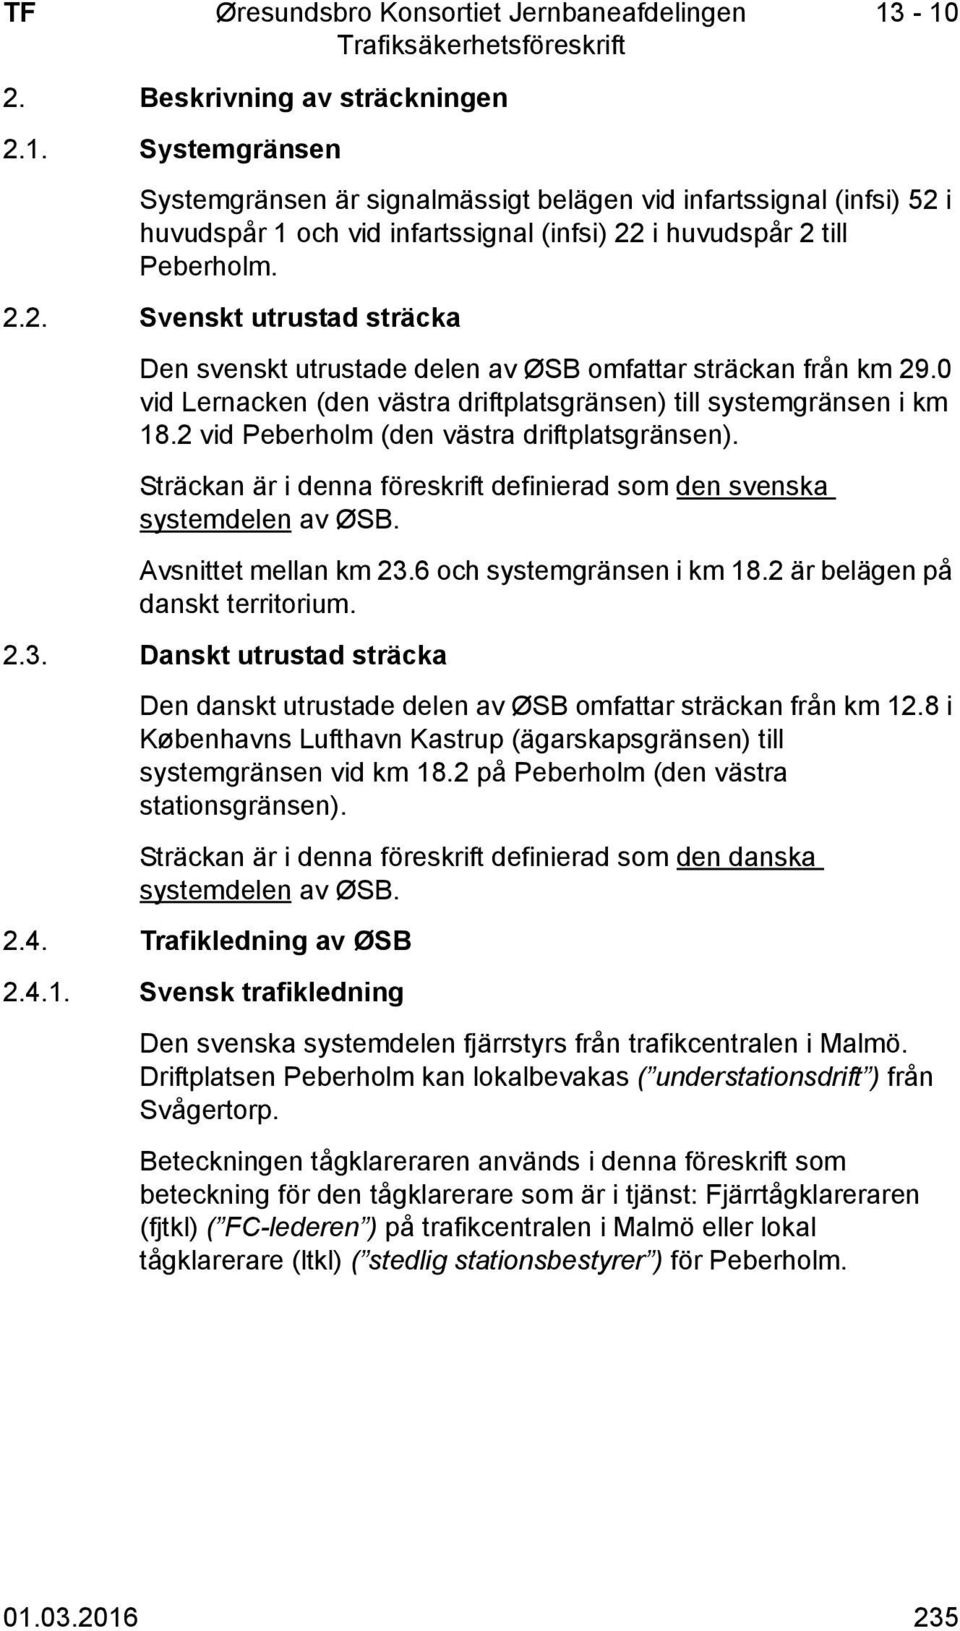 0 vid Lernacken (den västra driftplatsgränsen) till systemgränsen i km 18.2 vid Peberholm (den västra driftplatsgränsen). Sträckan är i denna föreskrift definierad som den svenska systemdelen av ØSB.